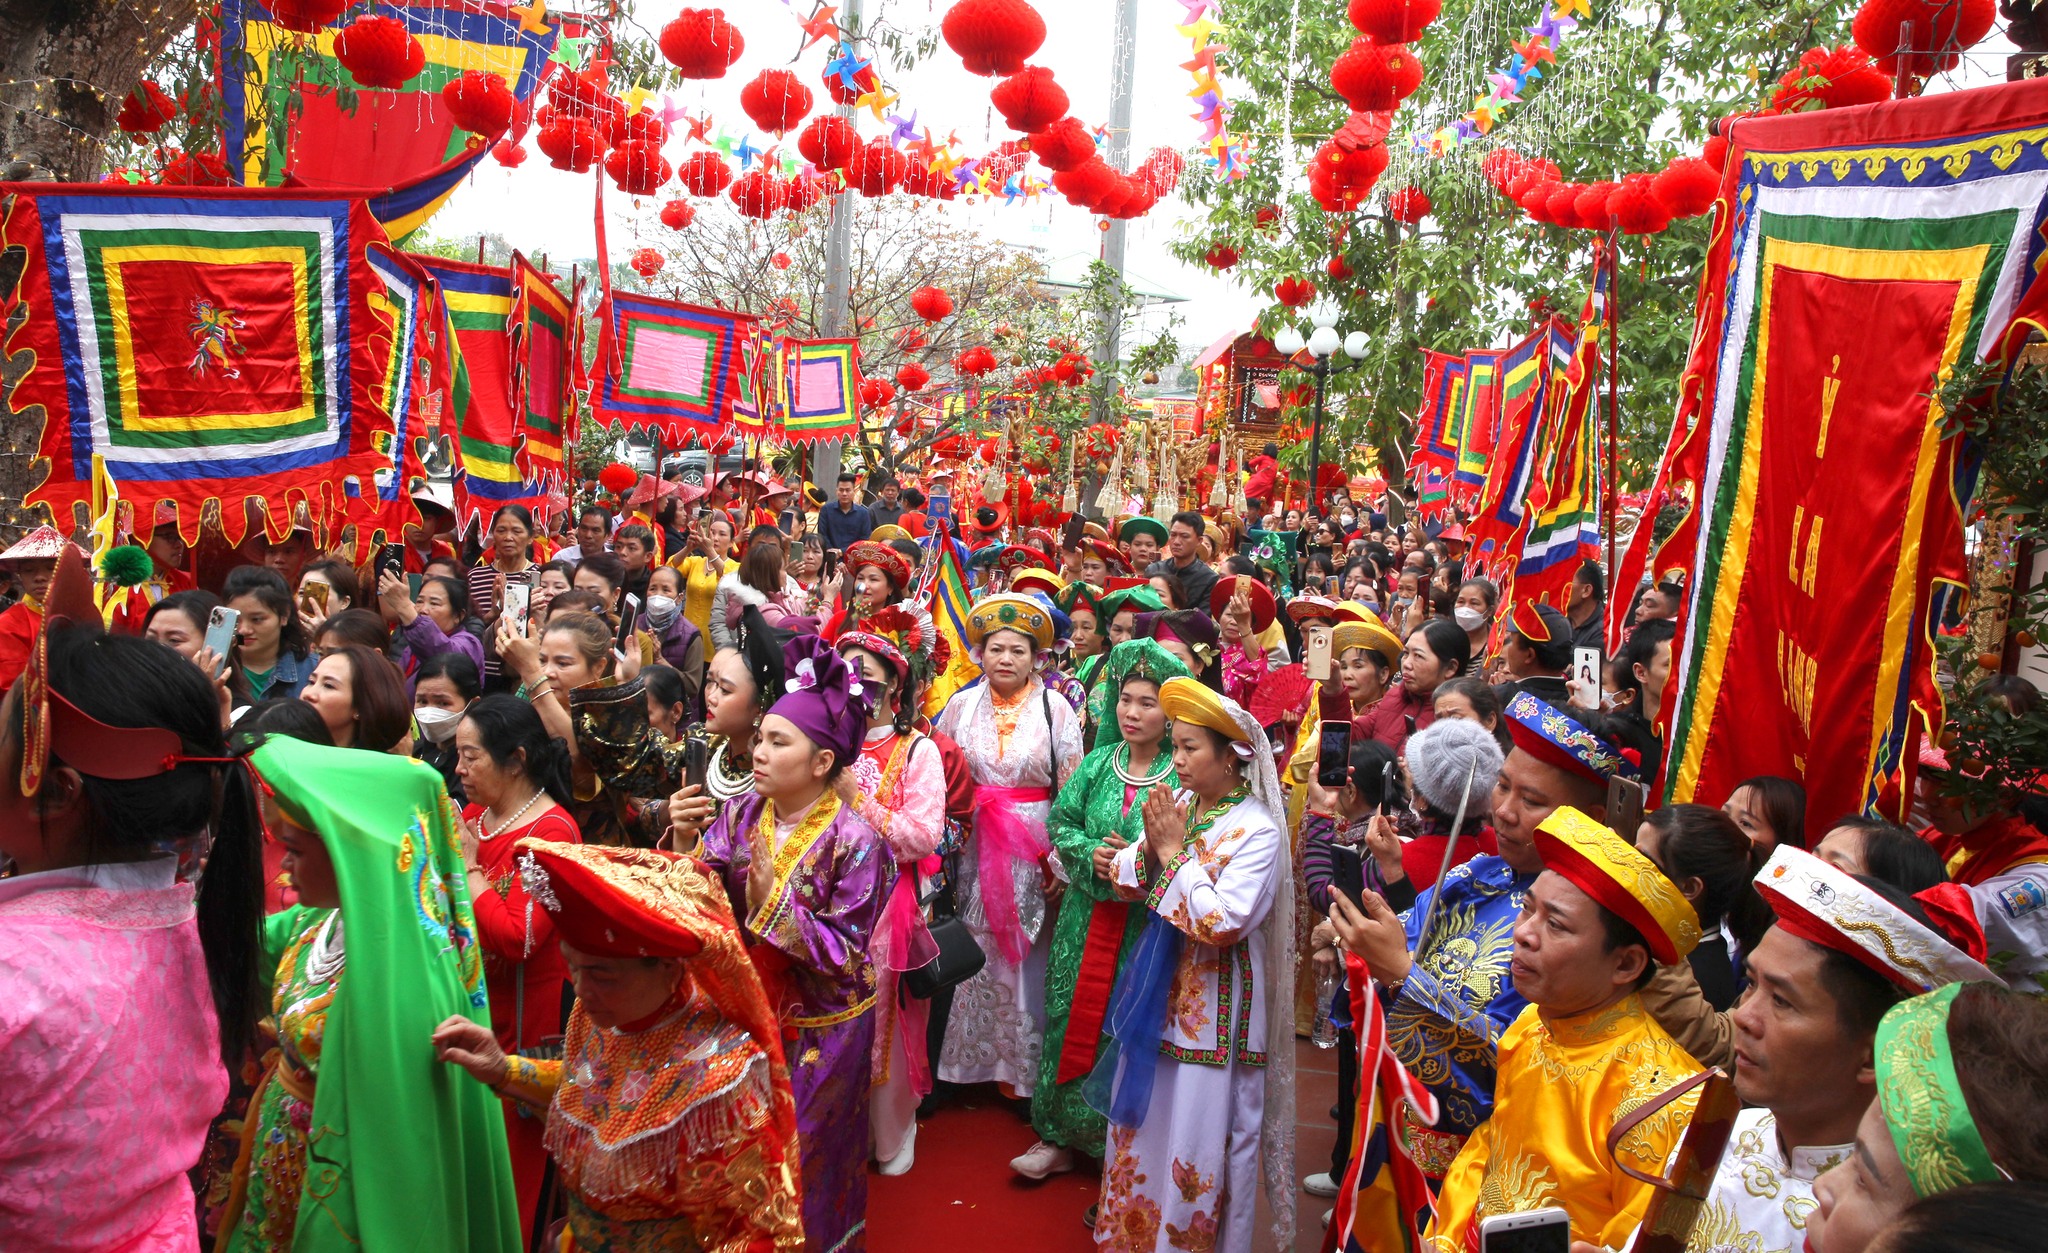 Du lịch Tâm linh từ Lễ hội qua màn ảnh tại Thành phố Tuyên Quang